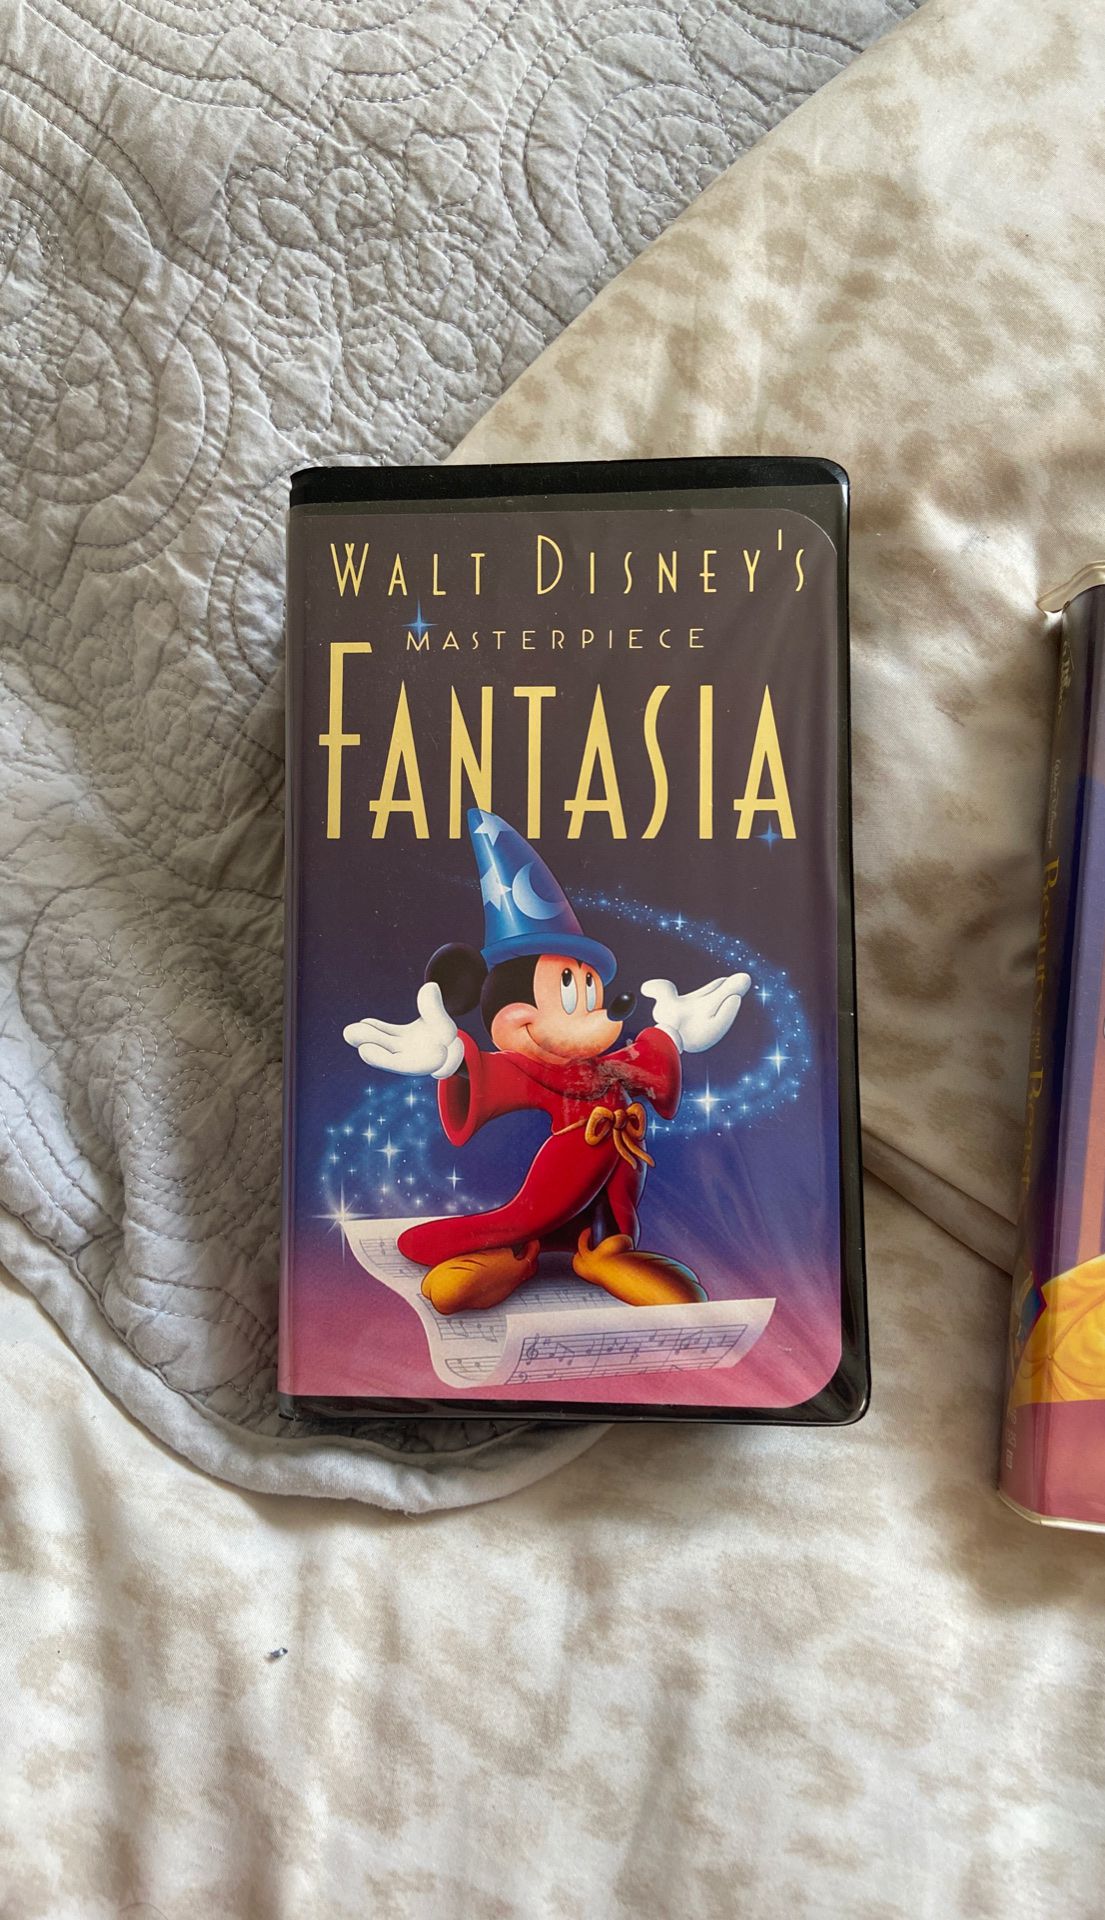 Original Fantasia VHS